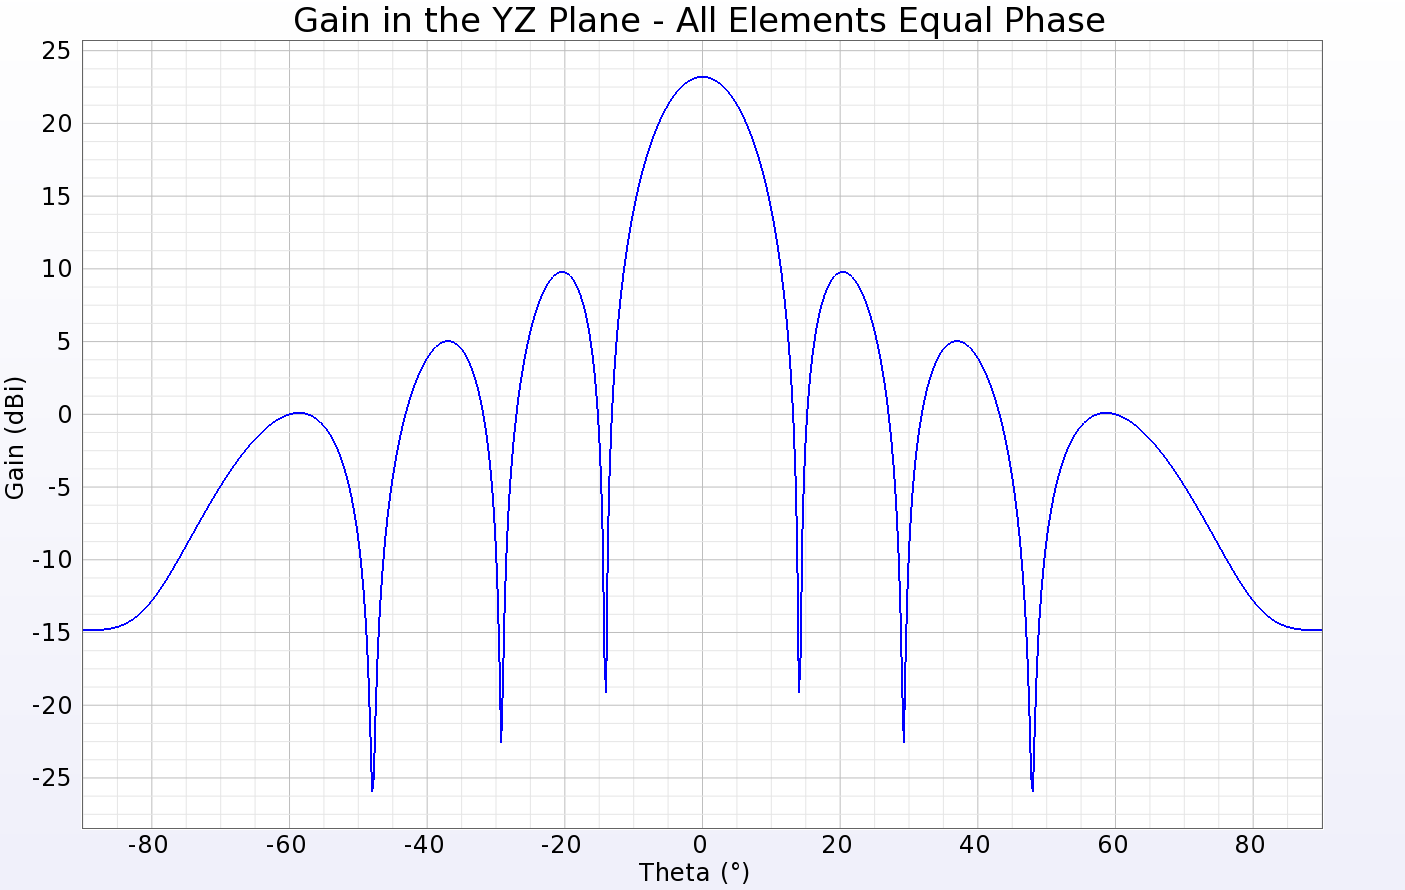 图 3：阵列图案横截面上的增益线图，用于显示所有贴片以相等振幅同相馈电的情况。峰值增益略高于 23 dBi，3 dB 波束宽度约为 12 度。